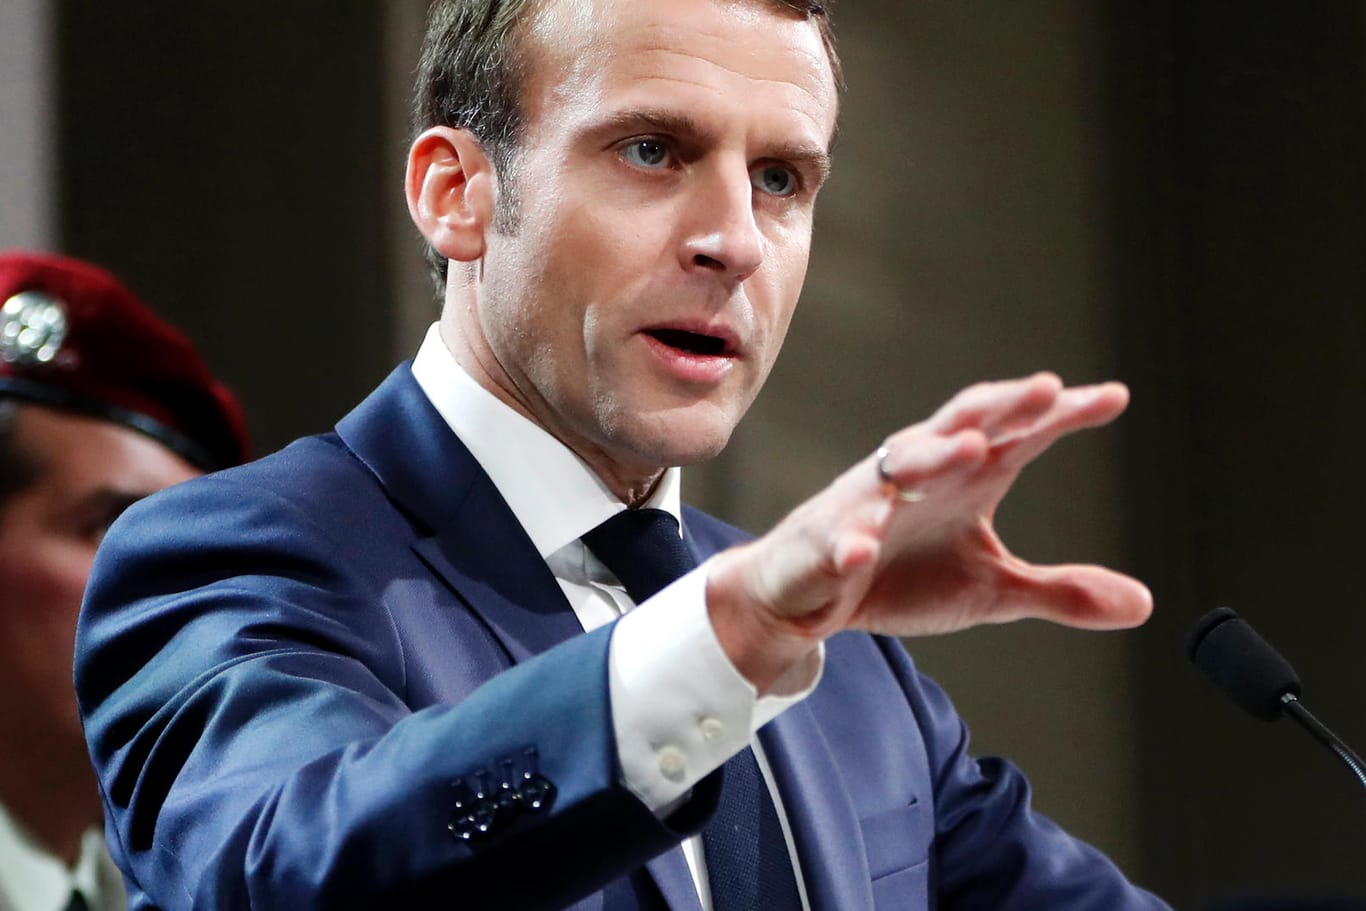 Emmanuel Macron: Der französische Präsident bleibt nach Italiens Vorwürfen gelassen.